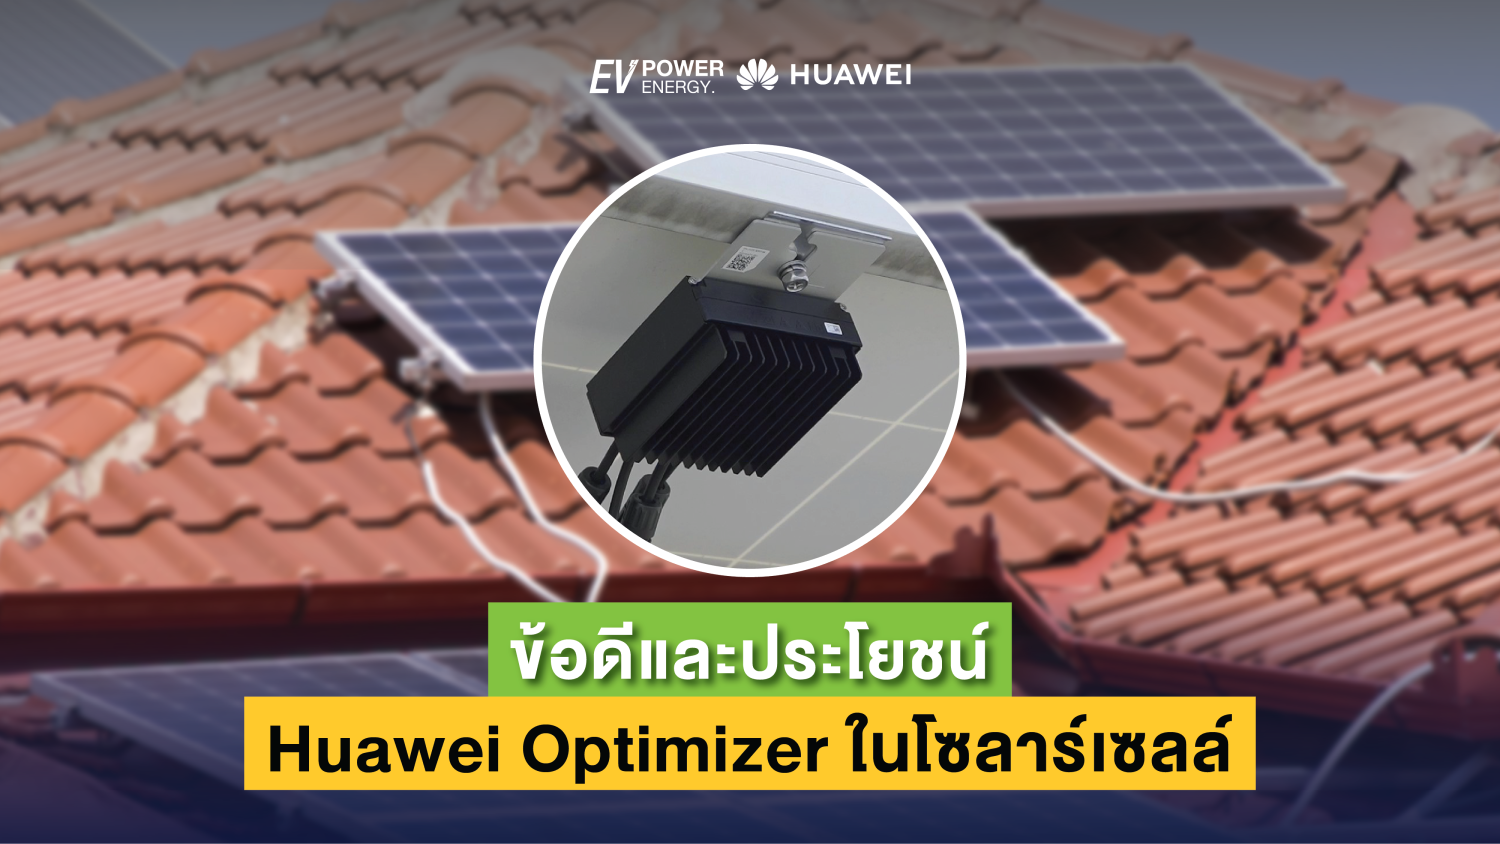 ข้อดีและประโยชน์ของการใช้ Huawei Optimizer ในโซลาร์เซลล์ 1